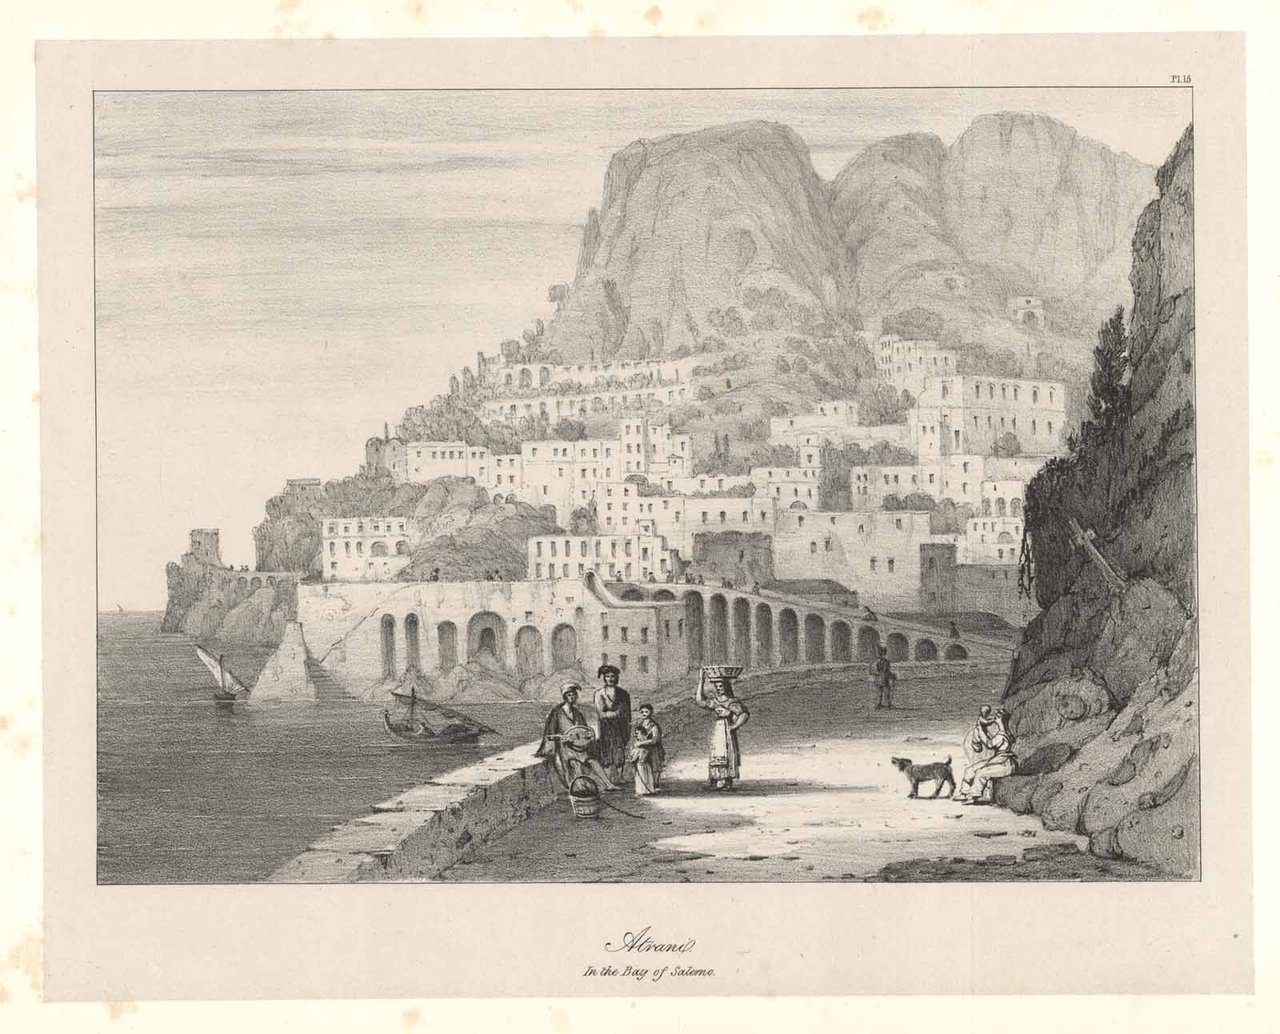 Atrani in the Bay of Salerno